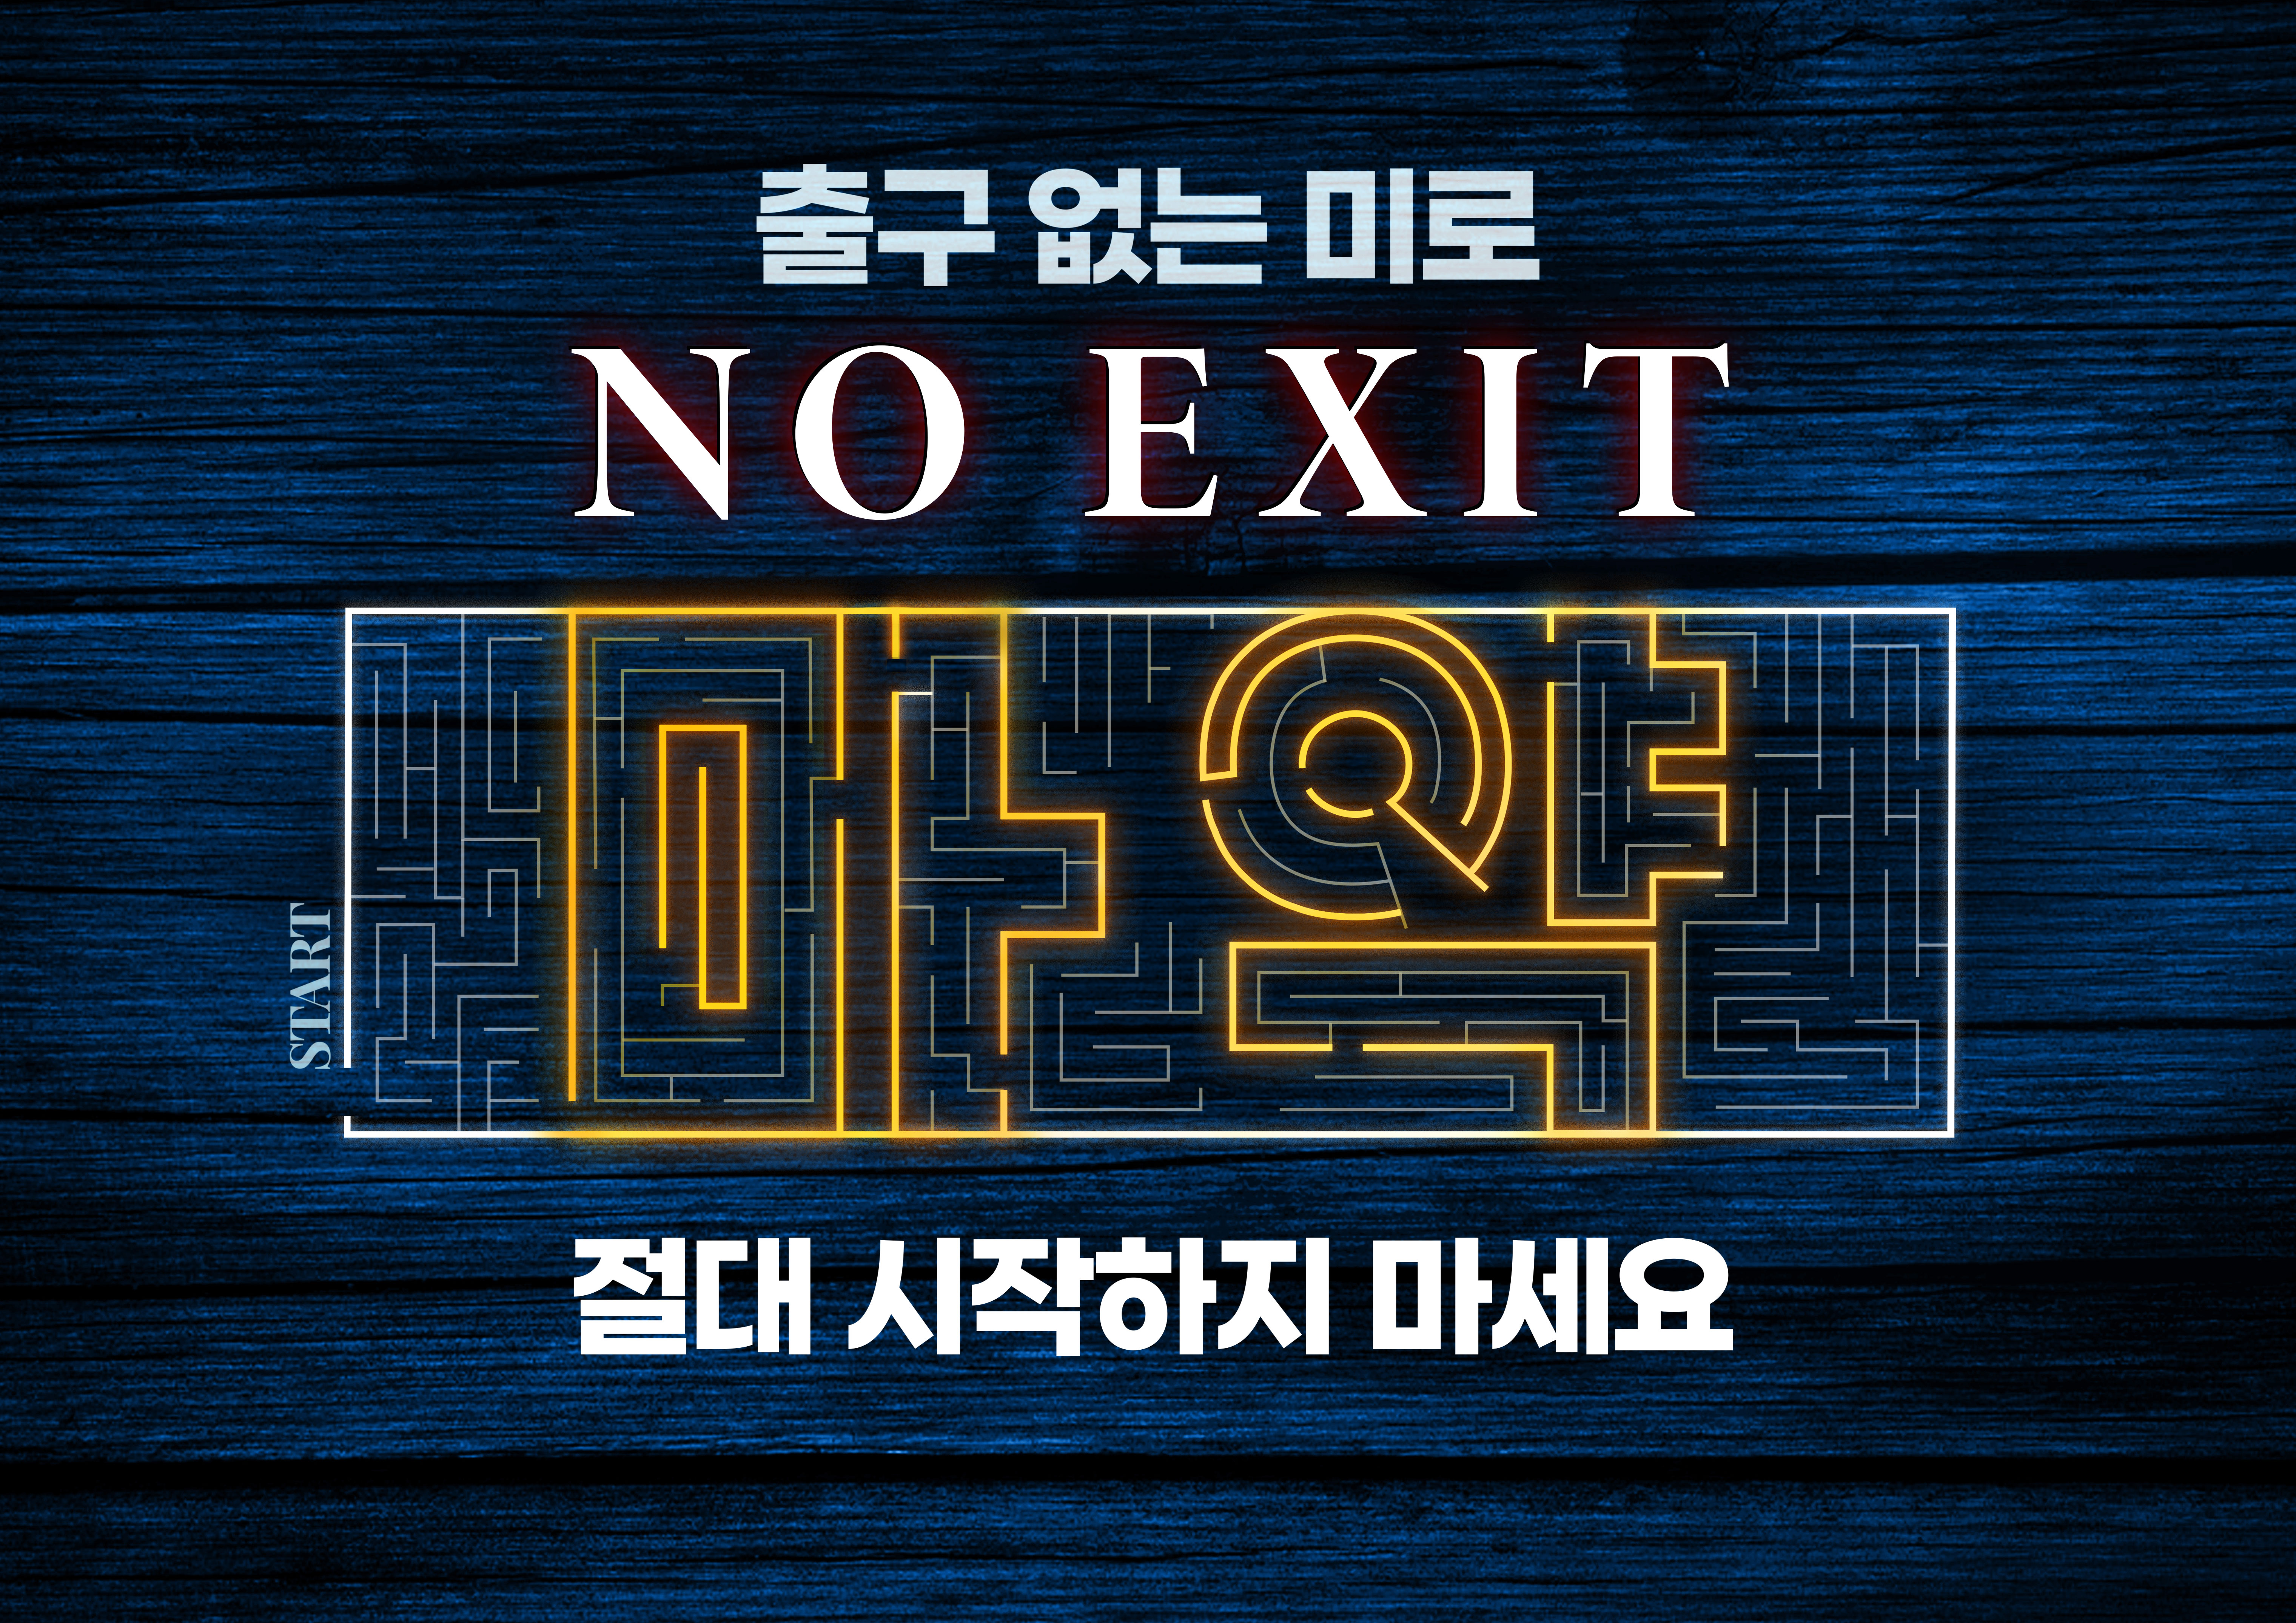 경남경찰 NO EXIT 캠페인(블로그)의 파일 이미지